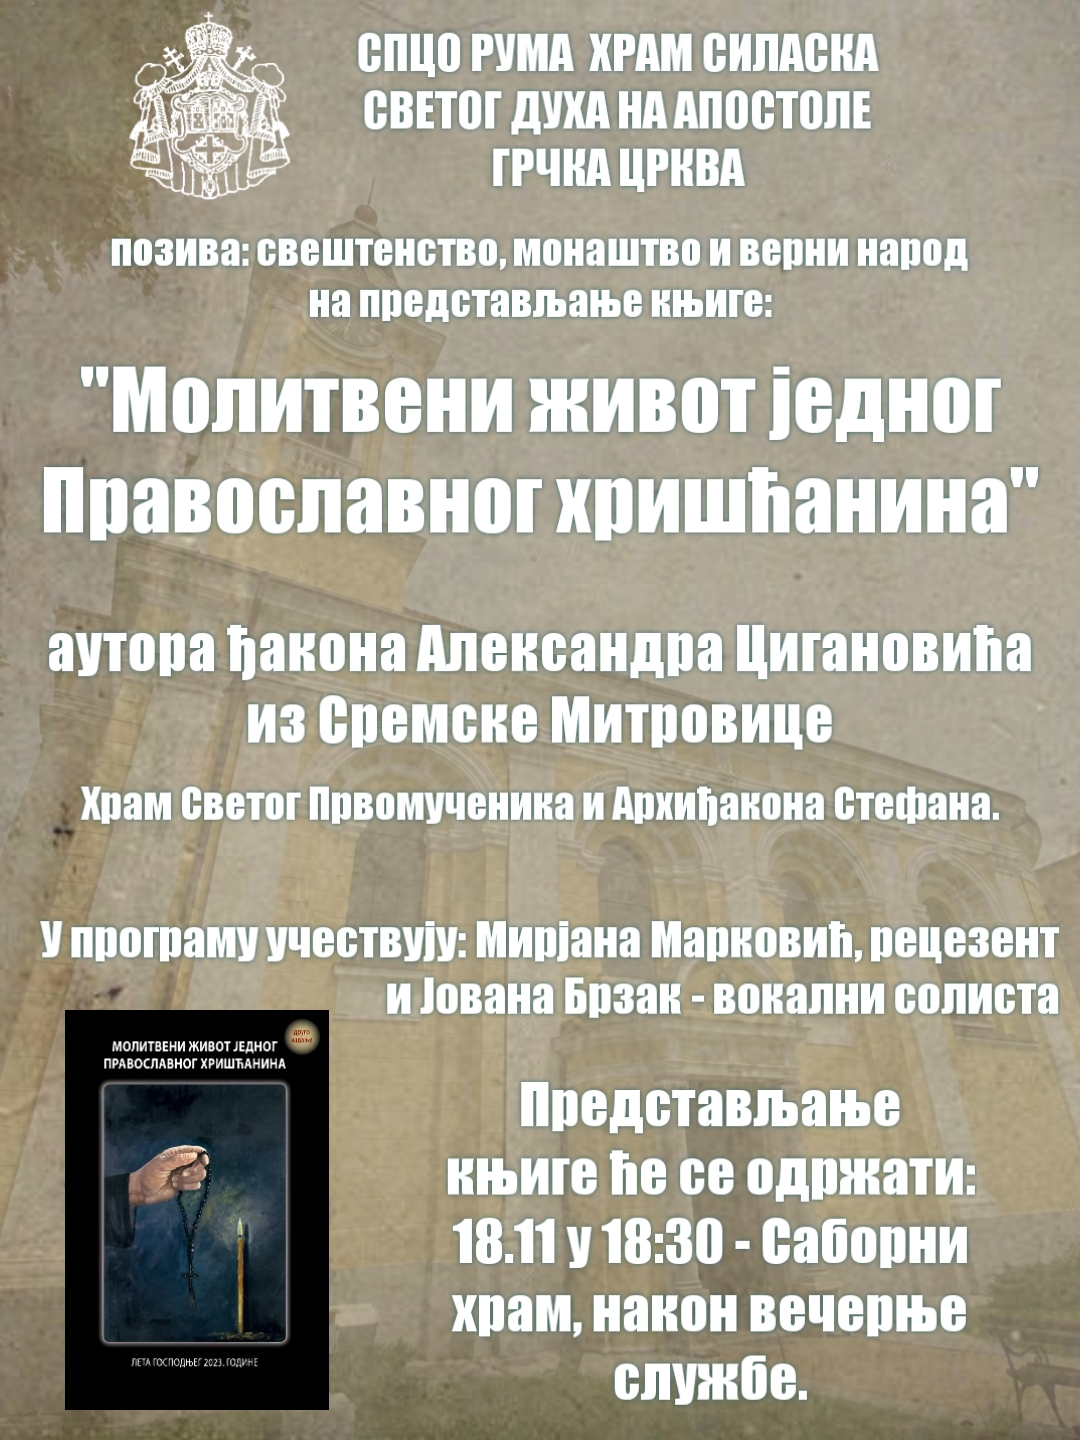 Најава: Представљање књиге ђакона Александра Цигановића у храму Силаска Светог Духа на апостоле у Руми